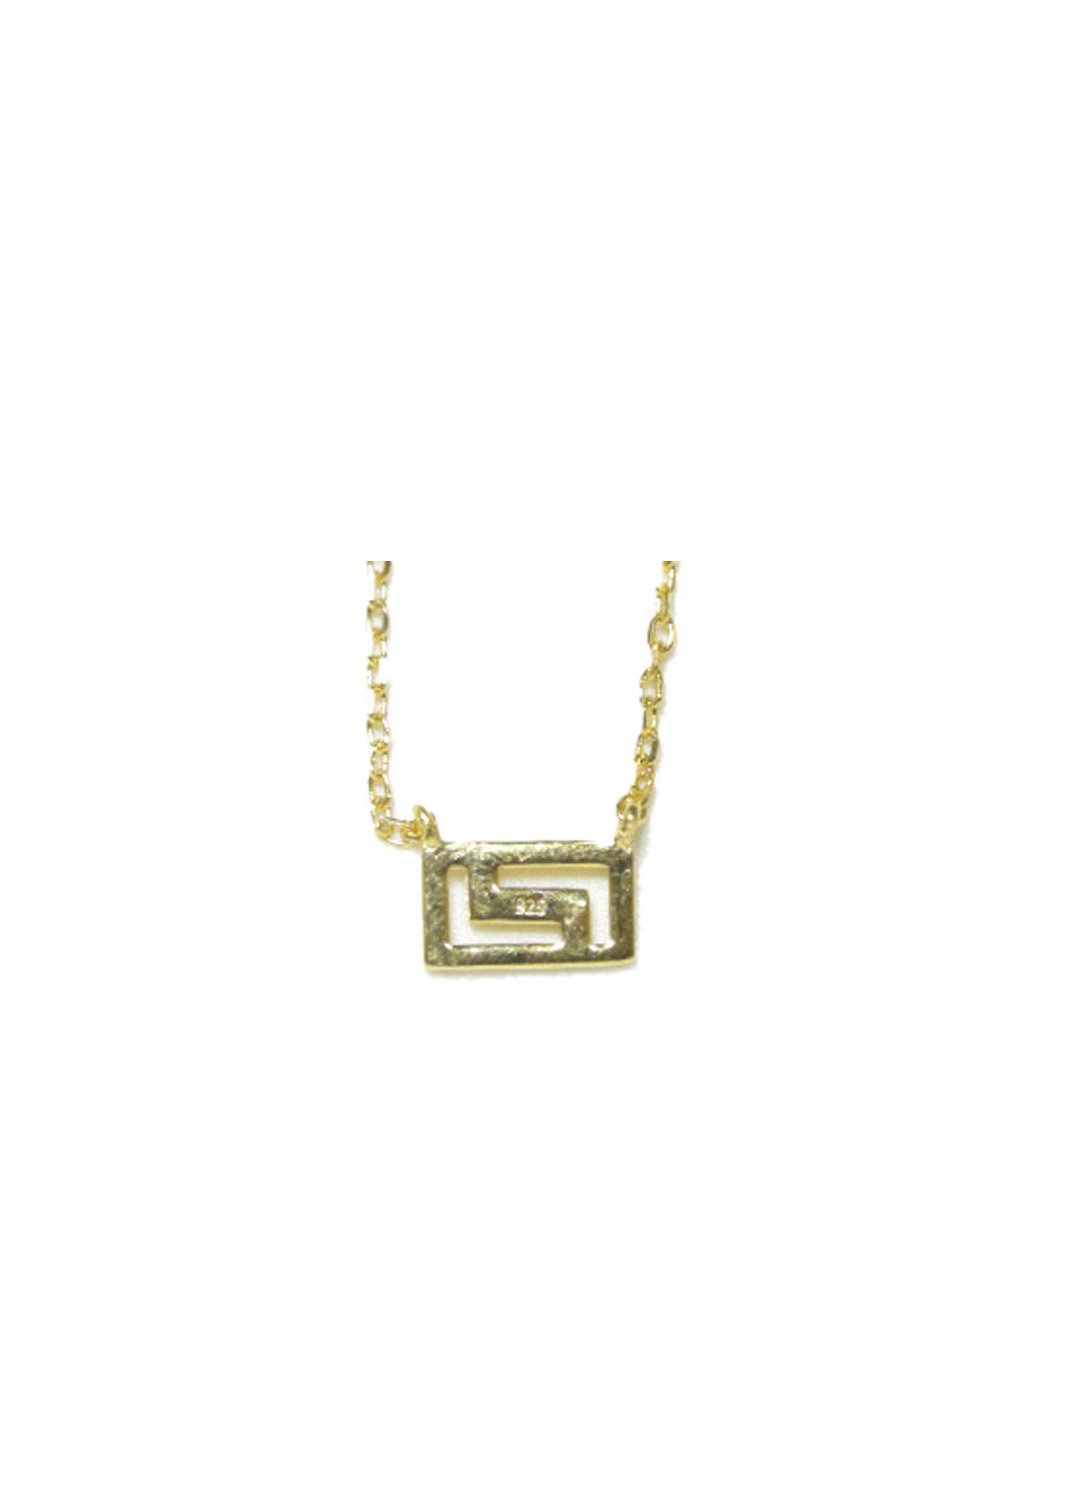 Greek key design - meander gold plated silver necklace